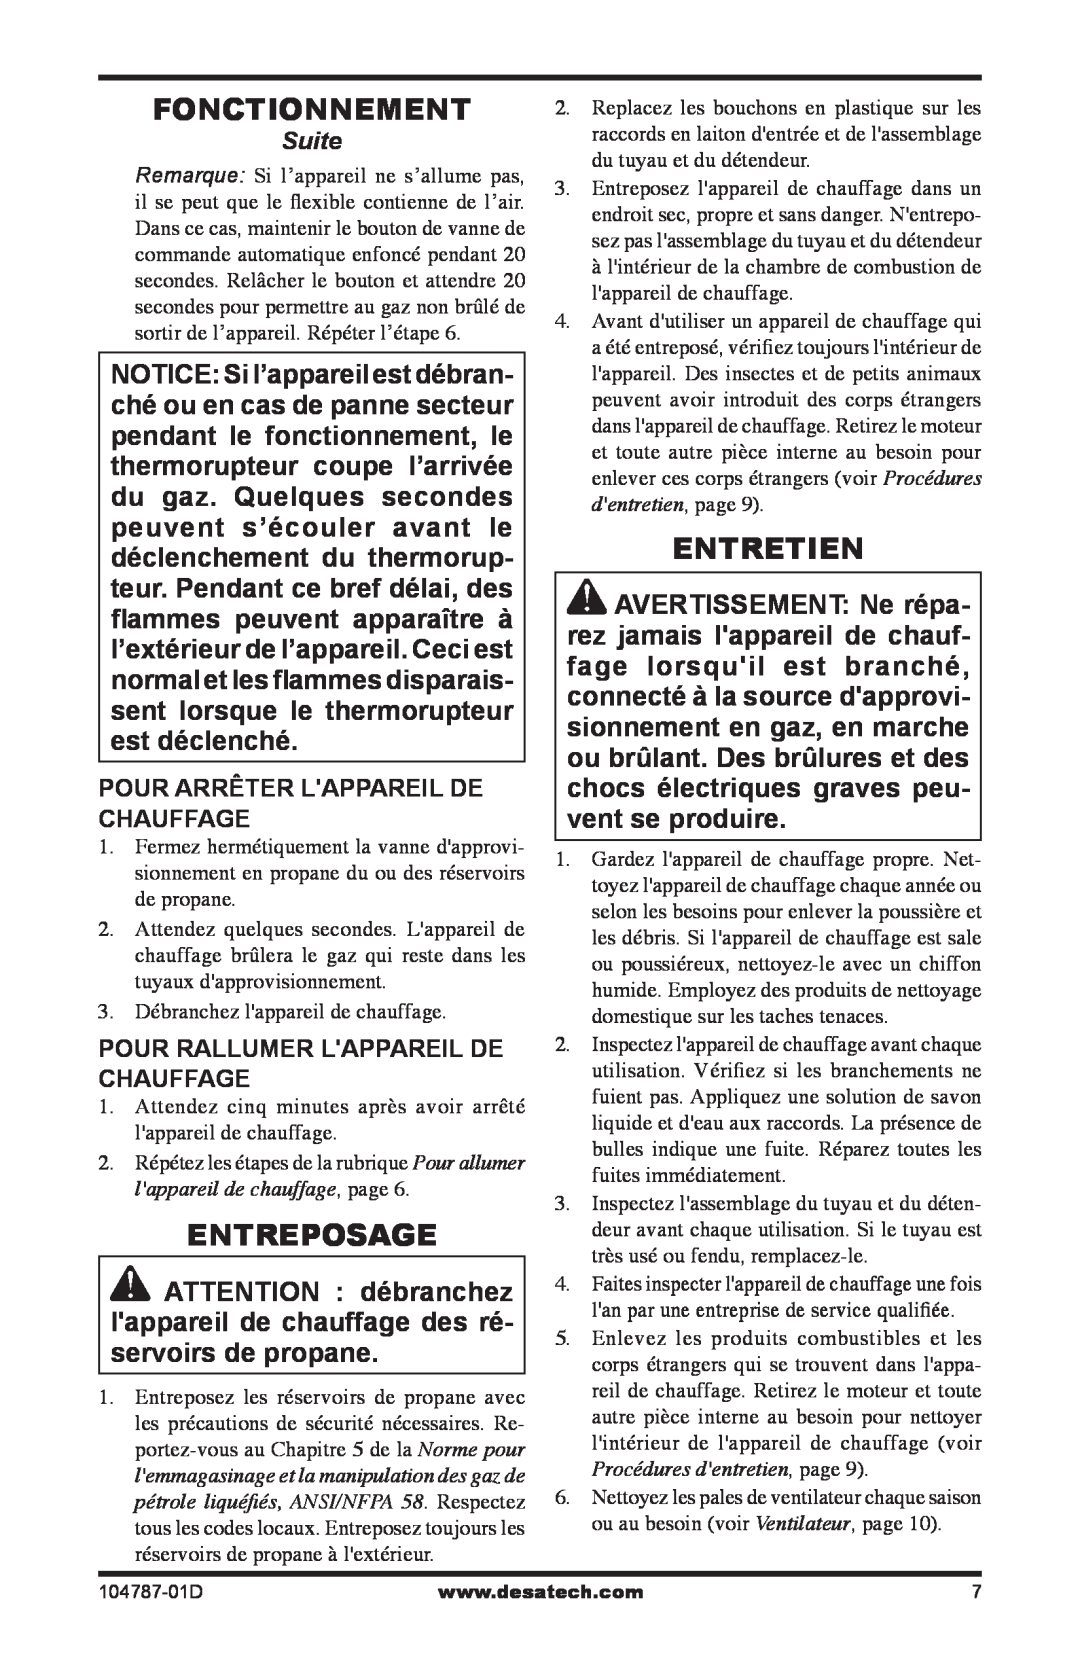 Desa RCLP30 owner manual Fonctionnement, Entreposage, Entretien, Pour Arrêter Lappareil De Chauffage 